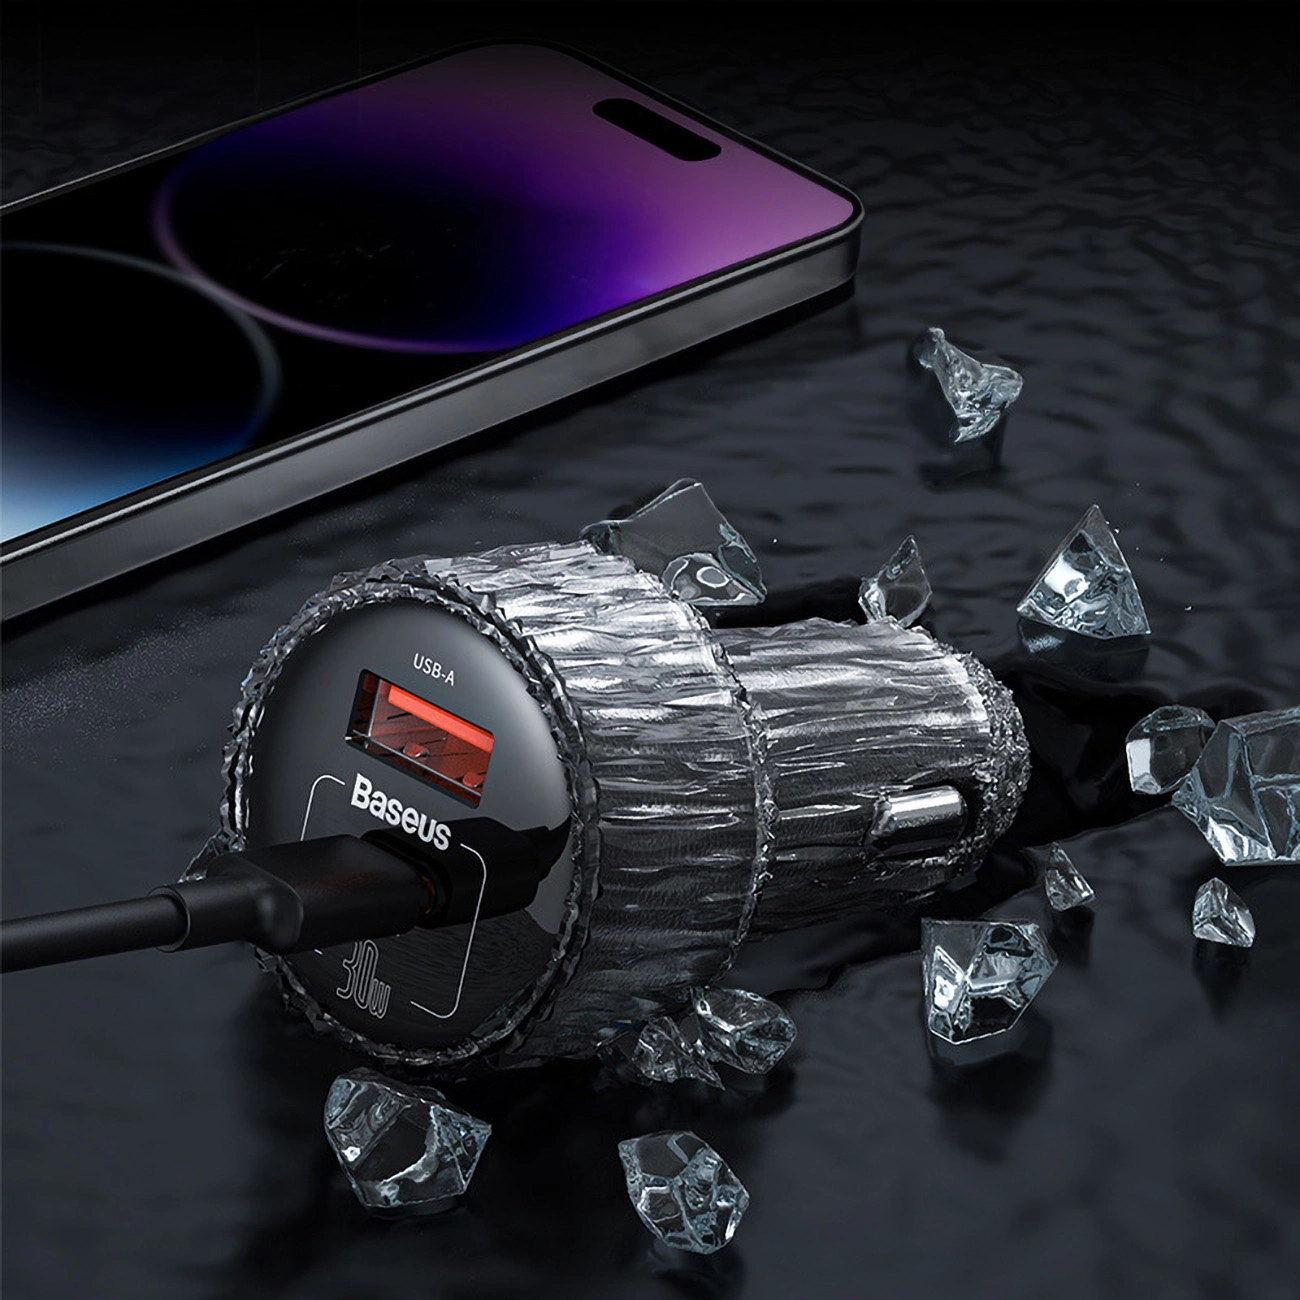 Ein mit dem Armaturenbrett verbundener Baseus-Autoadapter, dessen Verpackung von Kristallsplittern umgeben ist, daneben ein Smartphone mit einem lila-schwarzen Farbverlaufsbildschirm.